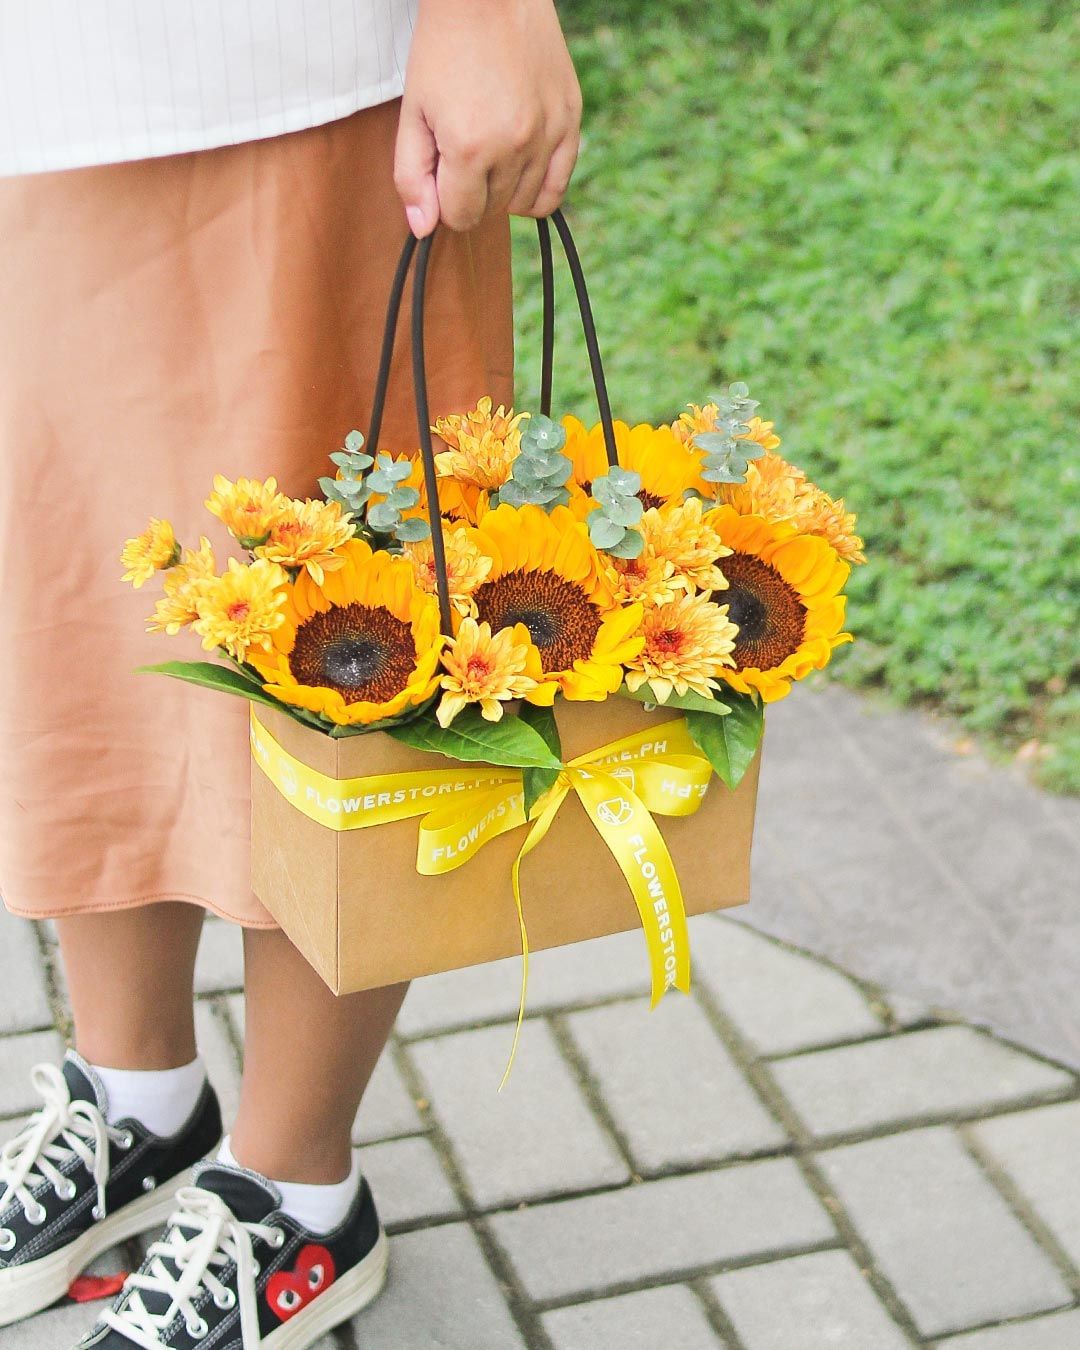 Flowerstore.ph flowers in handbag